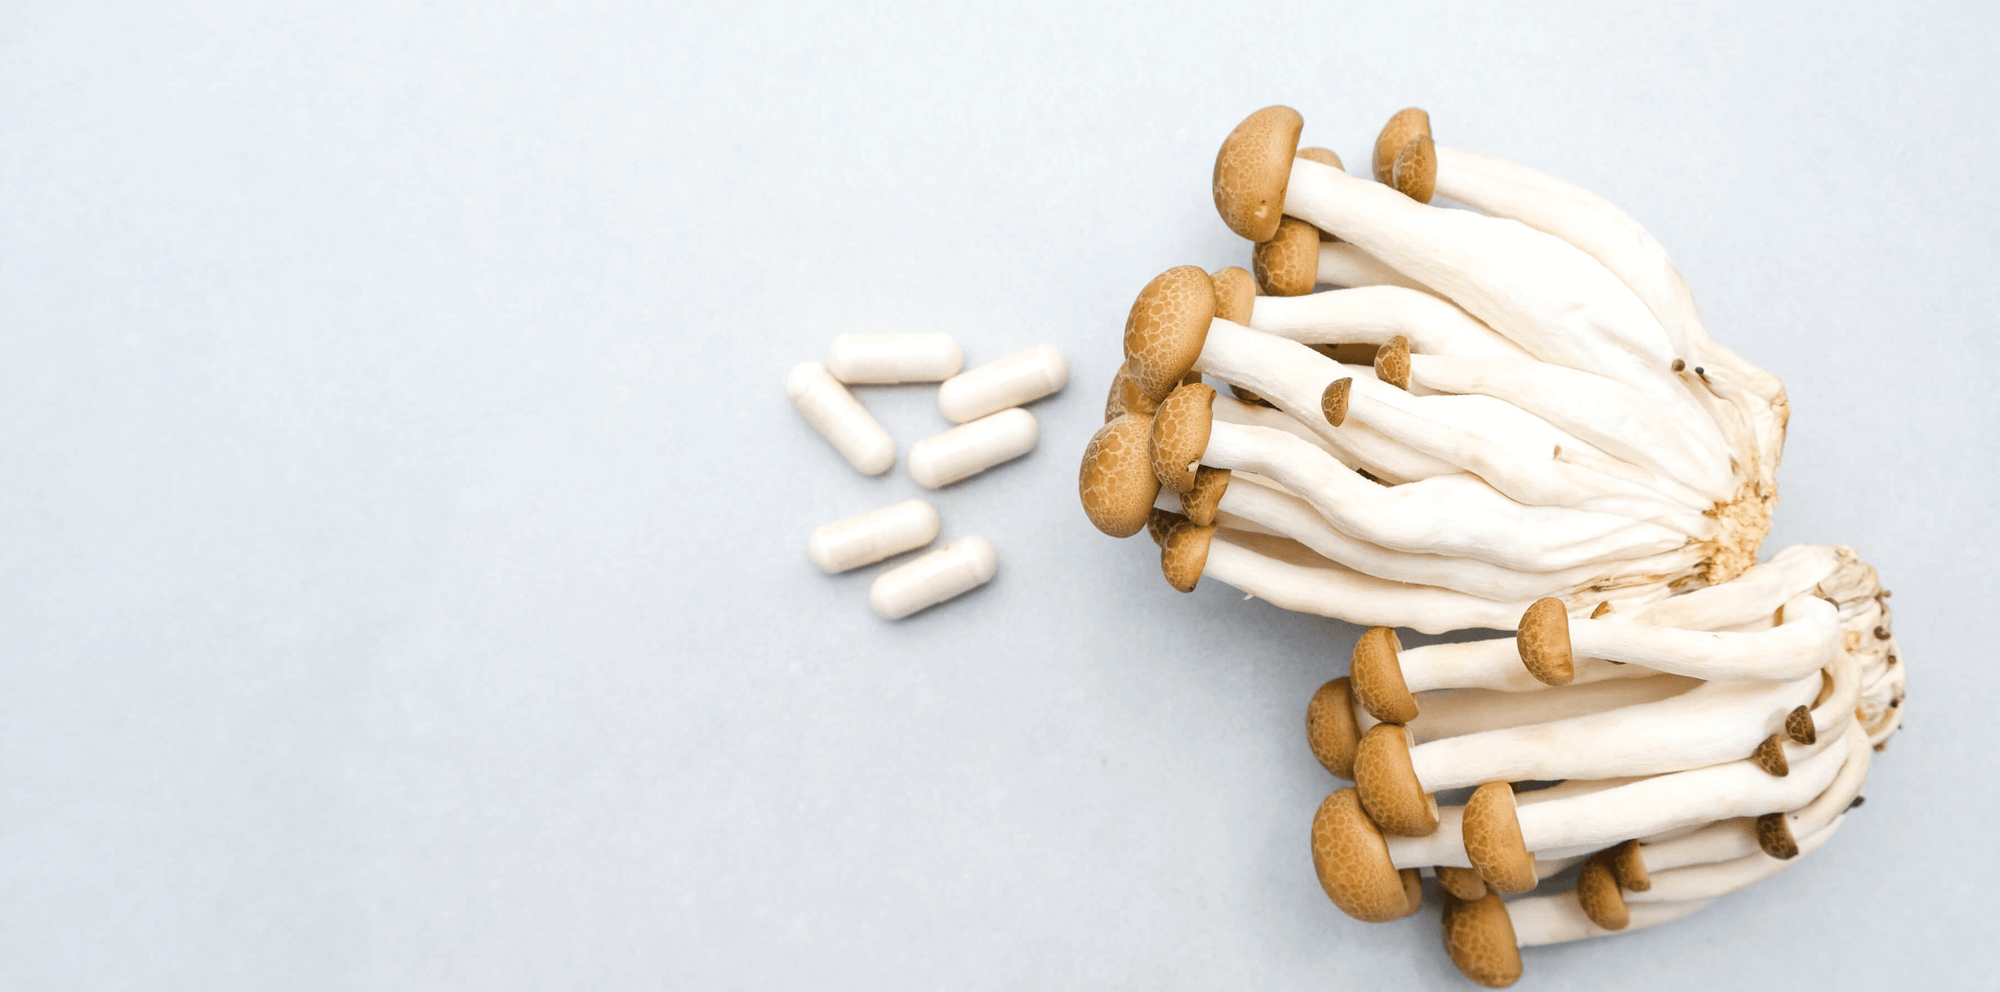 Nootropic Mushrooms with mushroom supplement capsules